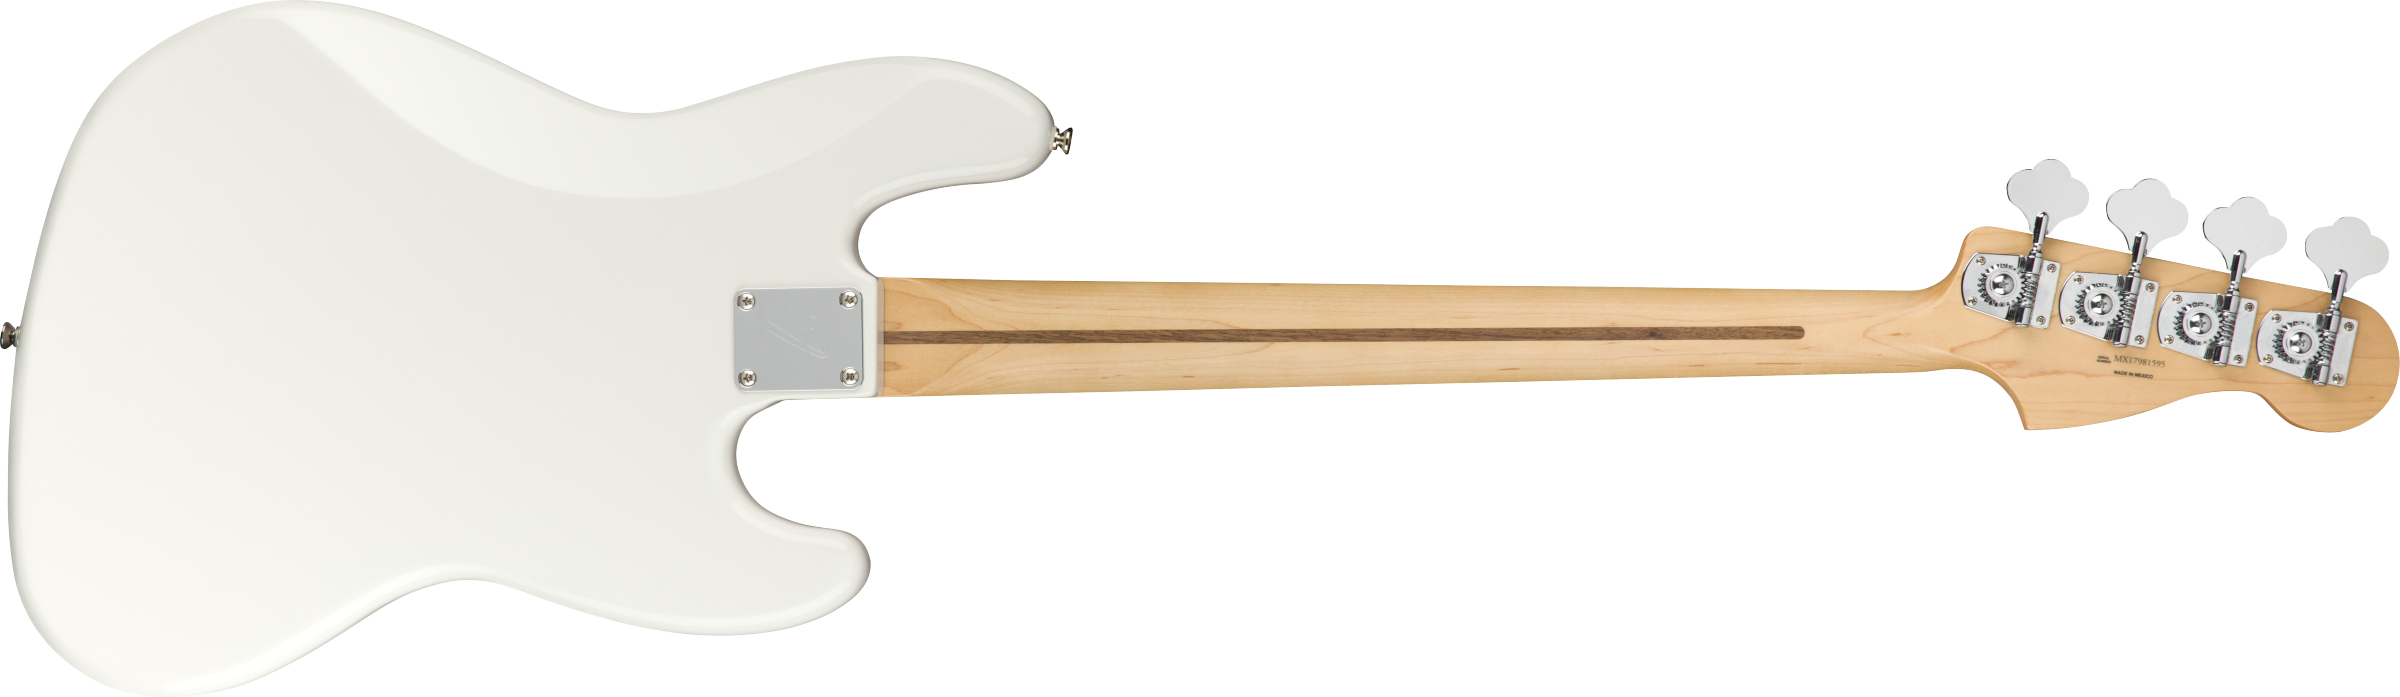 Fender Player Jazz Bass Left-Handed Maple Fb Polar White used